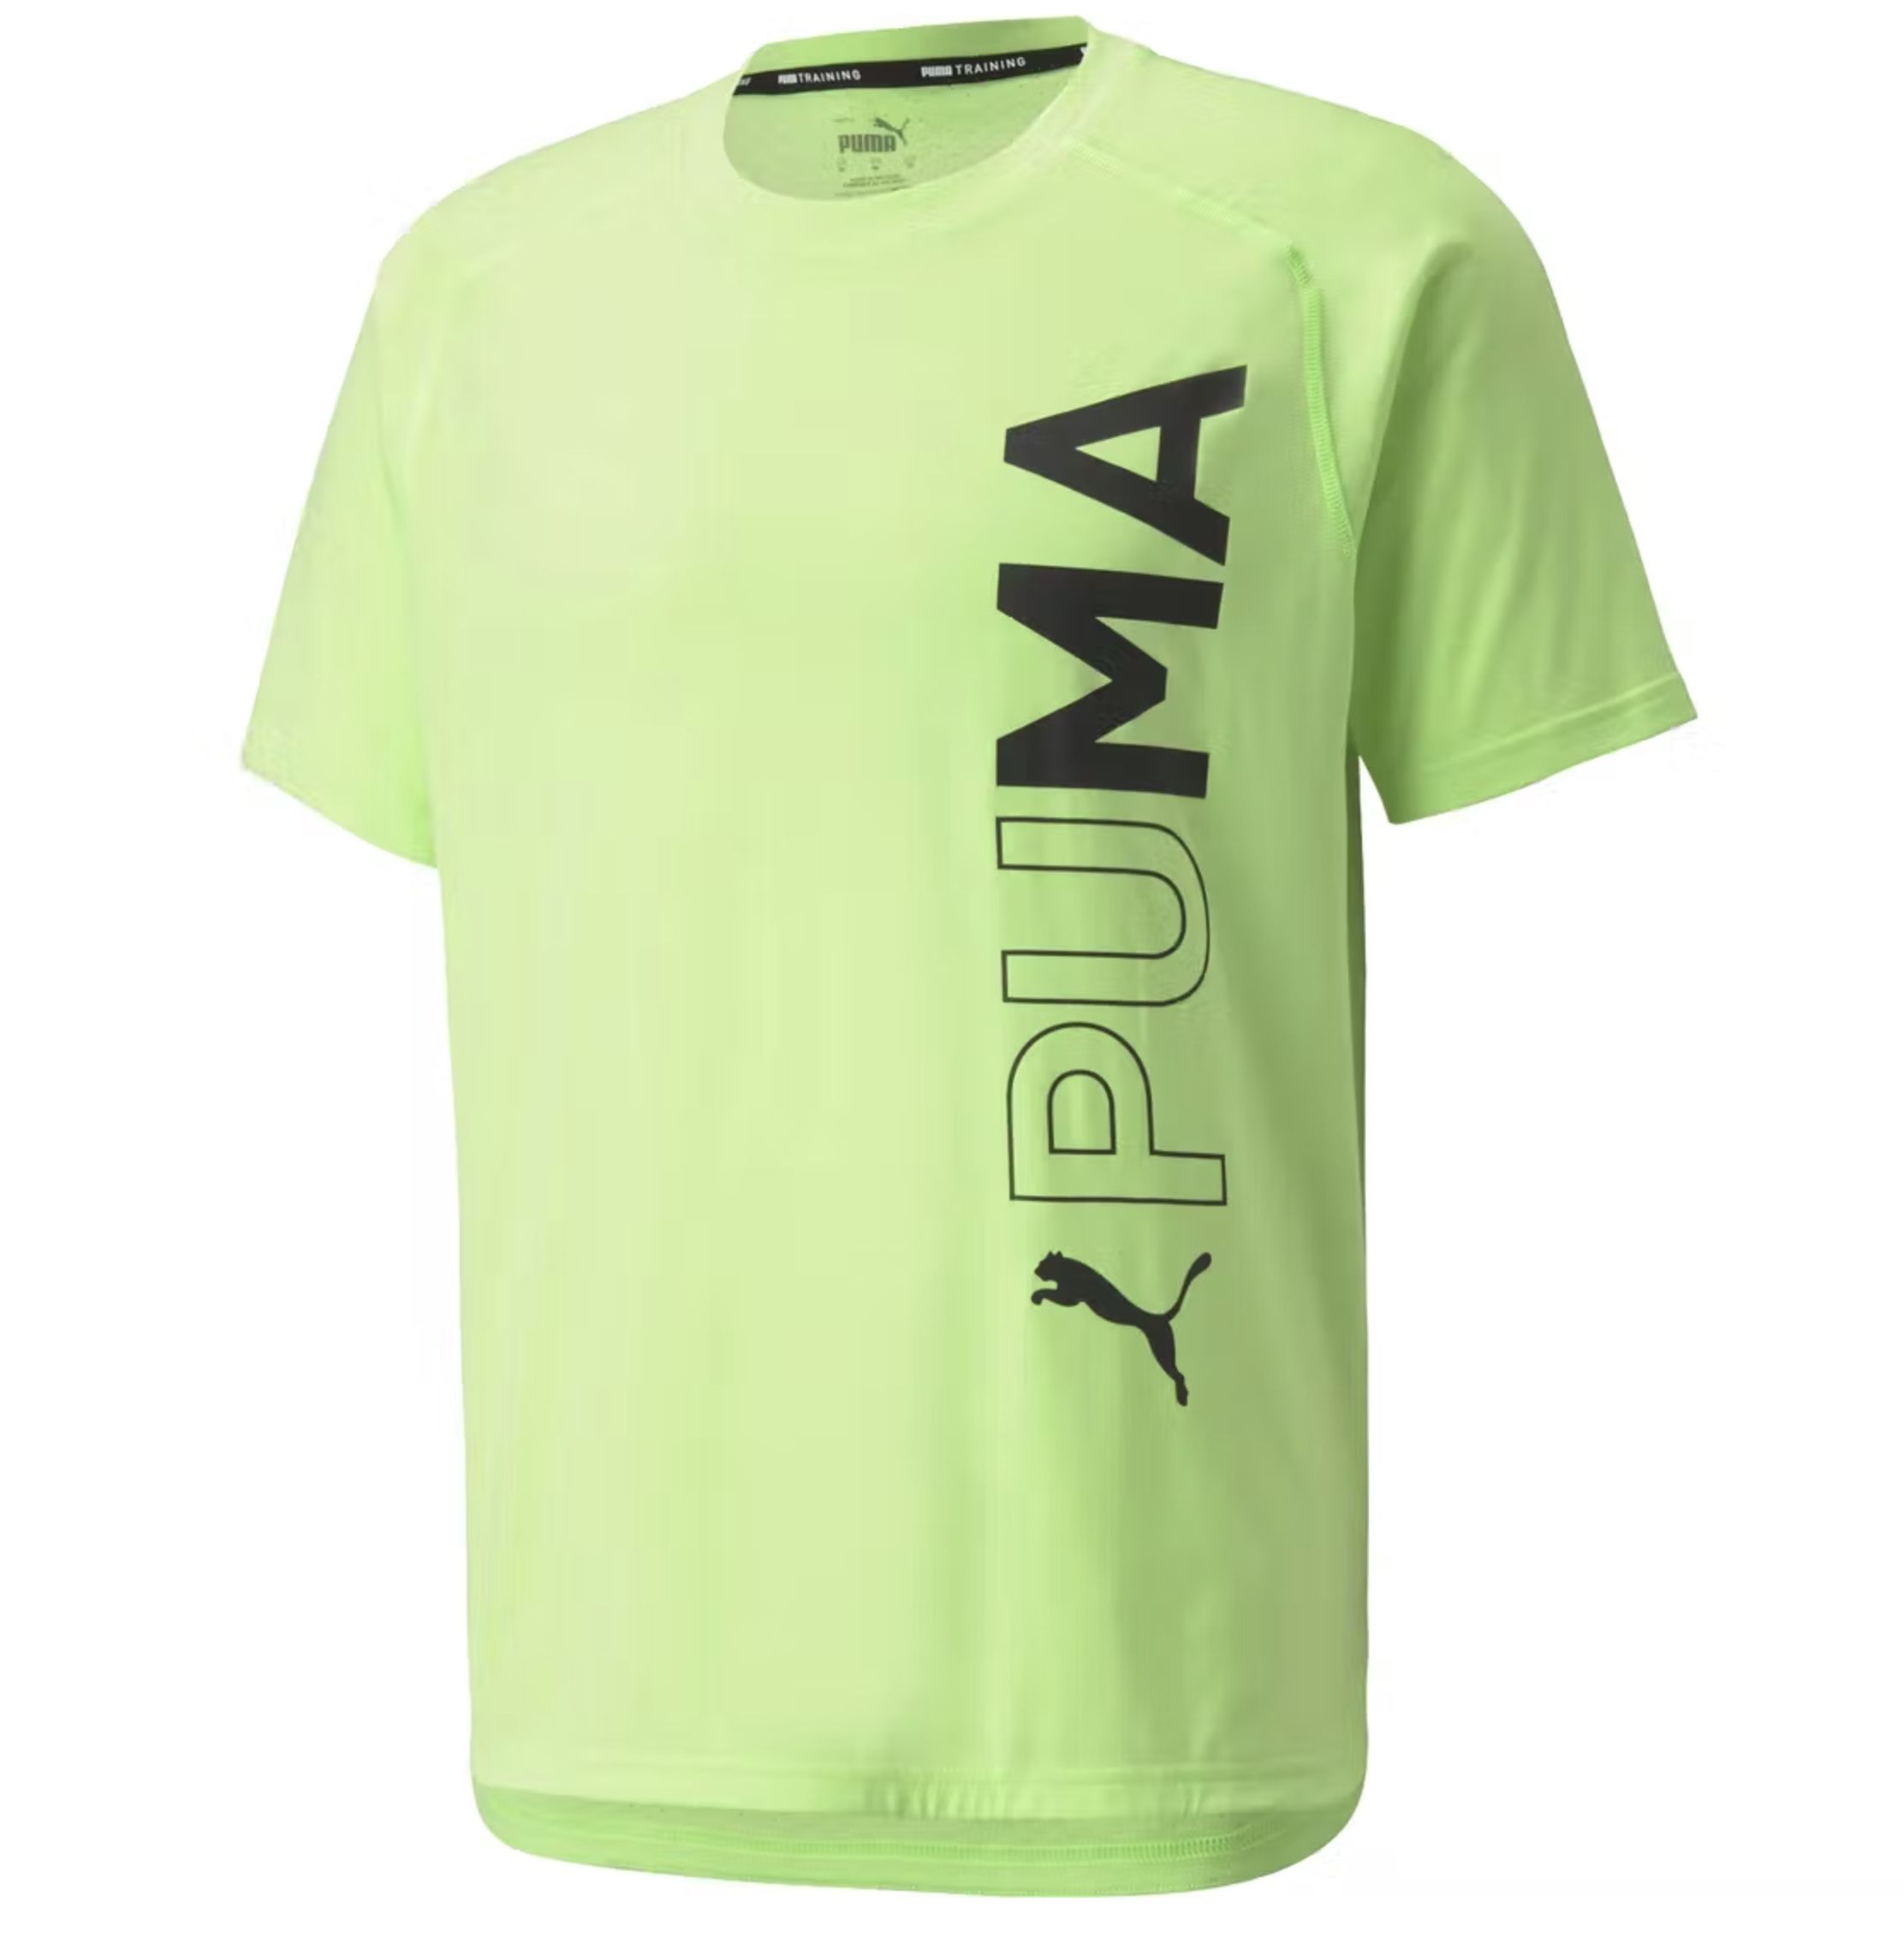 Puma Herren dryCELL Sport T-Shirt in Green-Glare für 11,98€ (statt 16€)